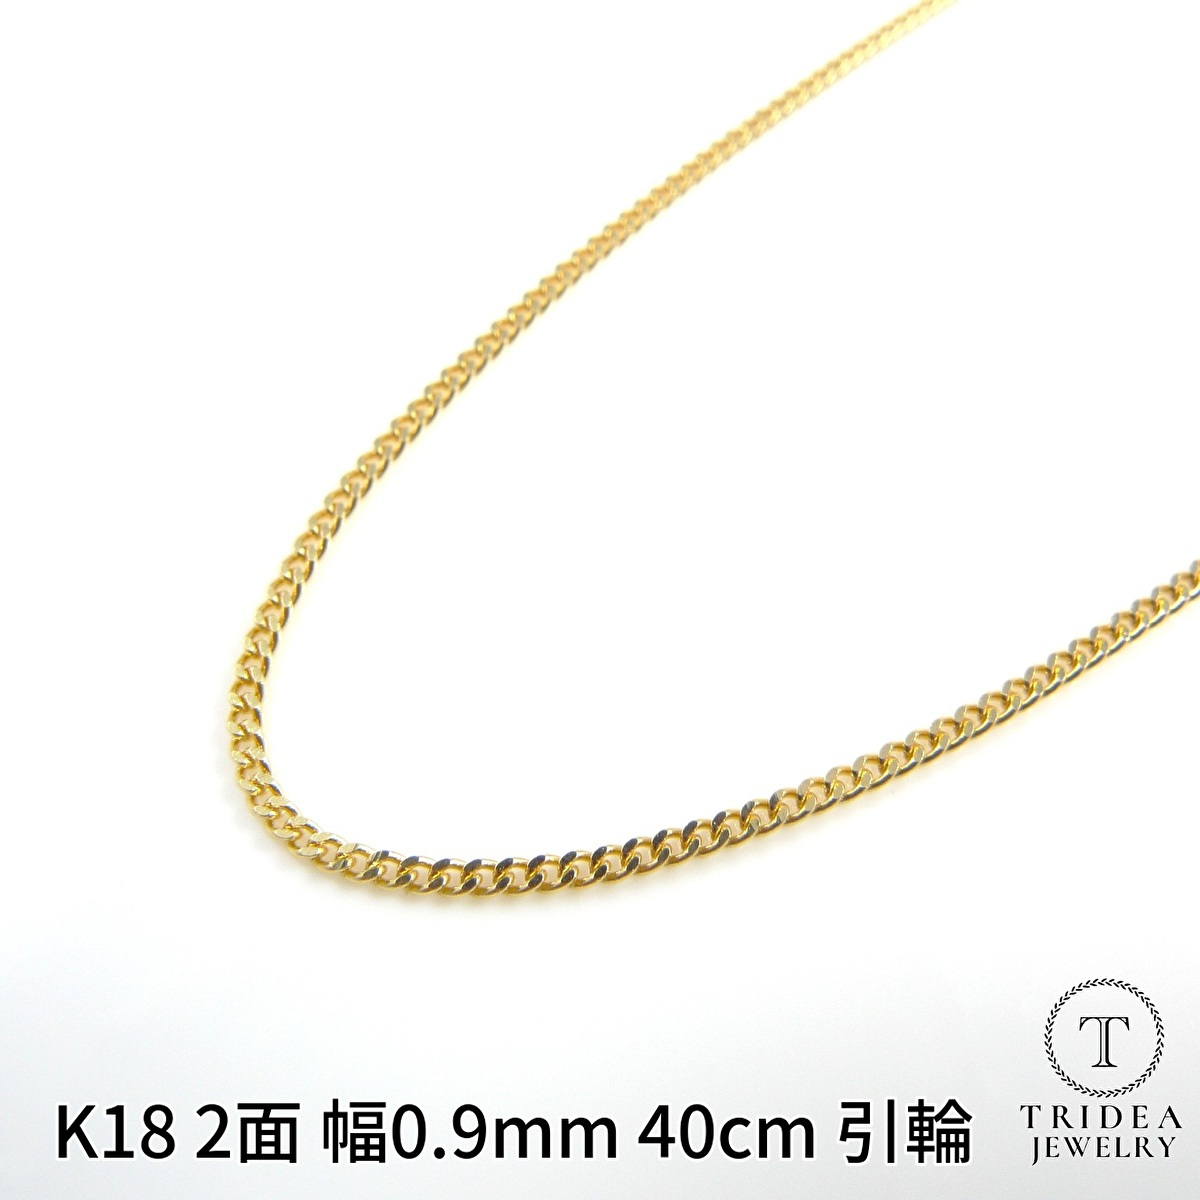 【正規店特価】G-9☆K18 喜平 キヘイチェーン ネックレス 5.0g/40cm ゴールド